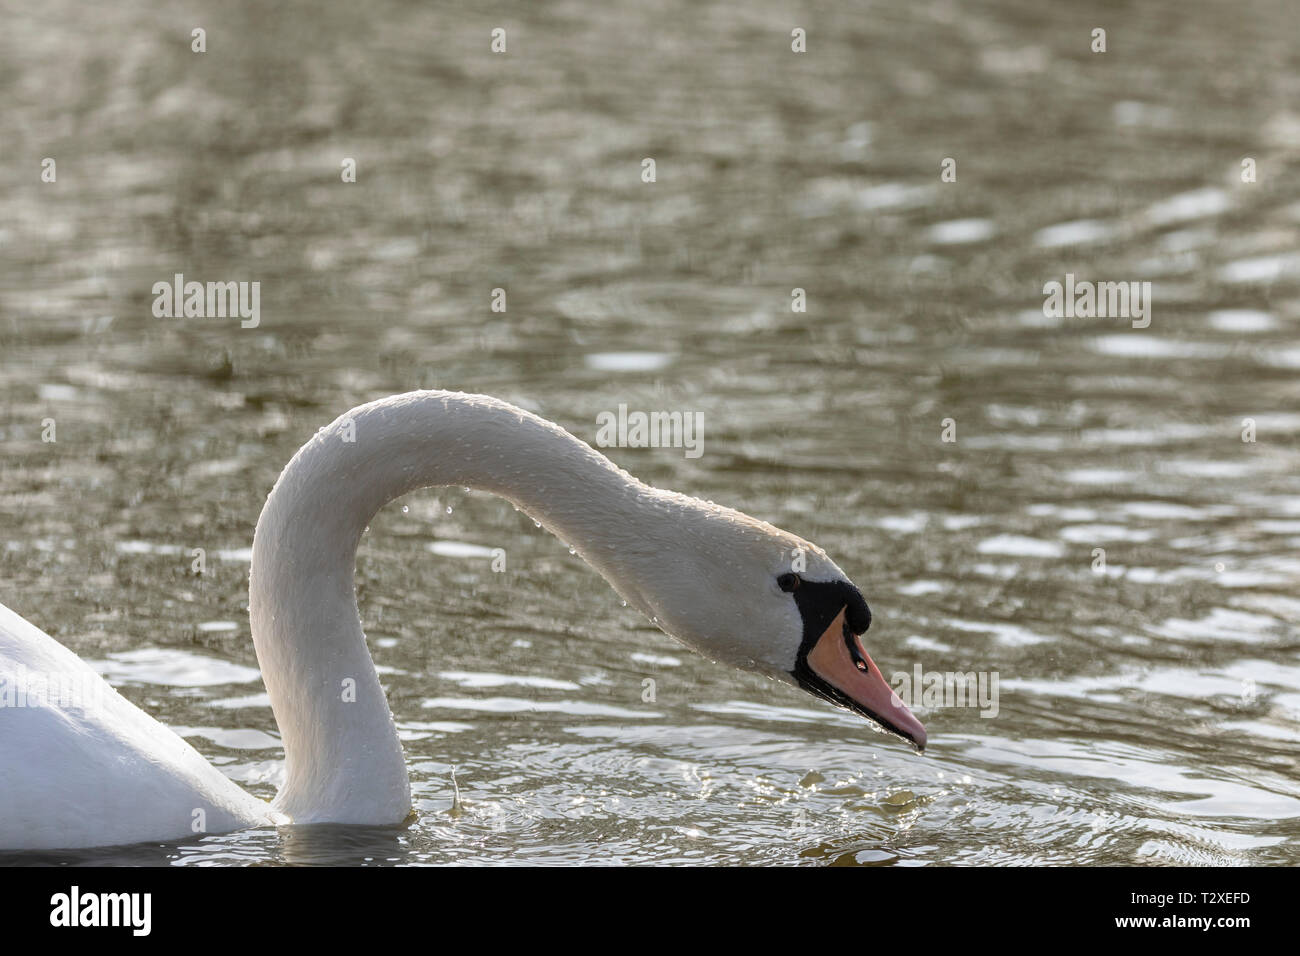 Cigno, (Cygnus olor), Regno Unito - della testa e del collo in dettaglio della sola swan con spazio di copia Foto Stock